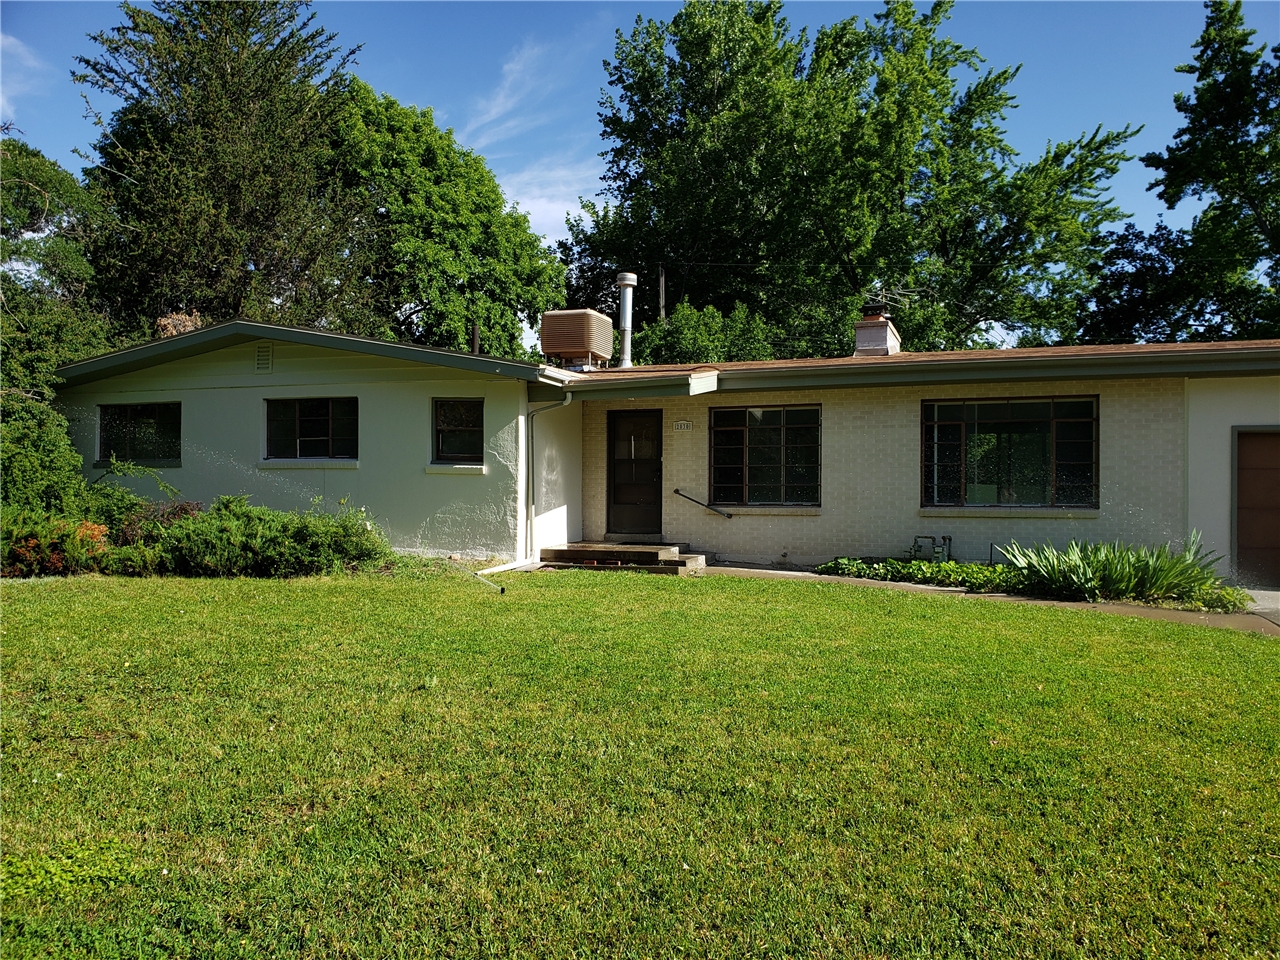 House For Rent At 2030 E Wildwood Dr Salt Lake City Ut 84121